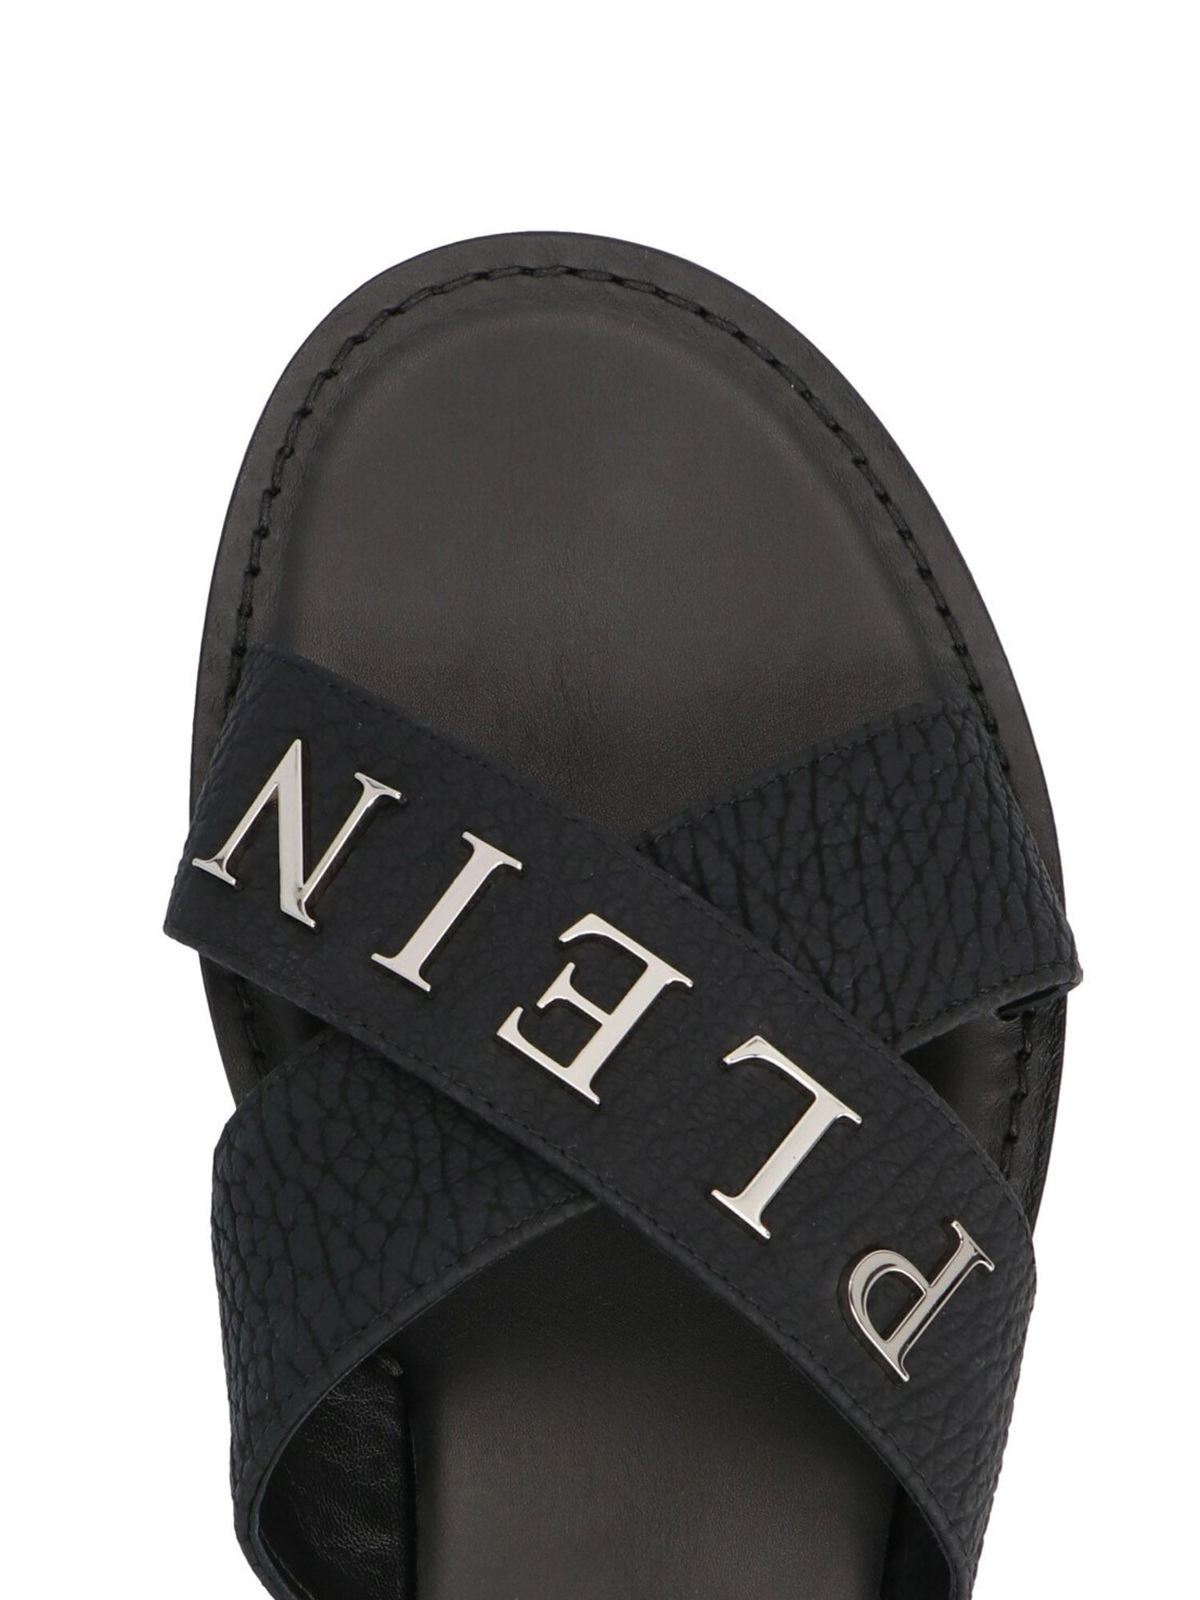 Net brittle Grape Sandals Philipp Plein - Iconic Plein sandals in black - PAASMSA0151PLE010N02